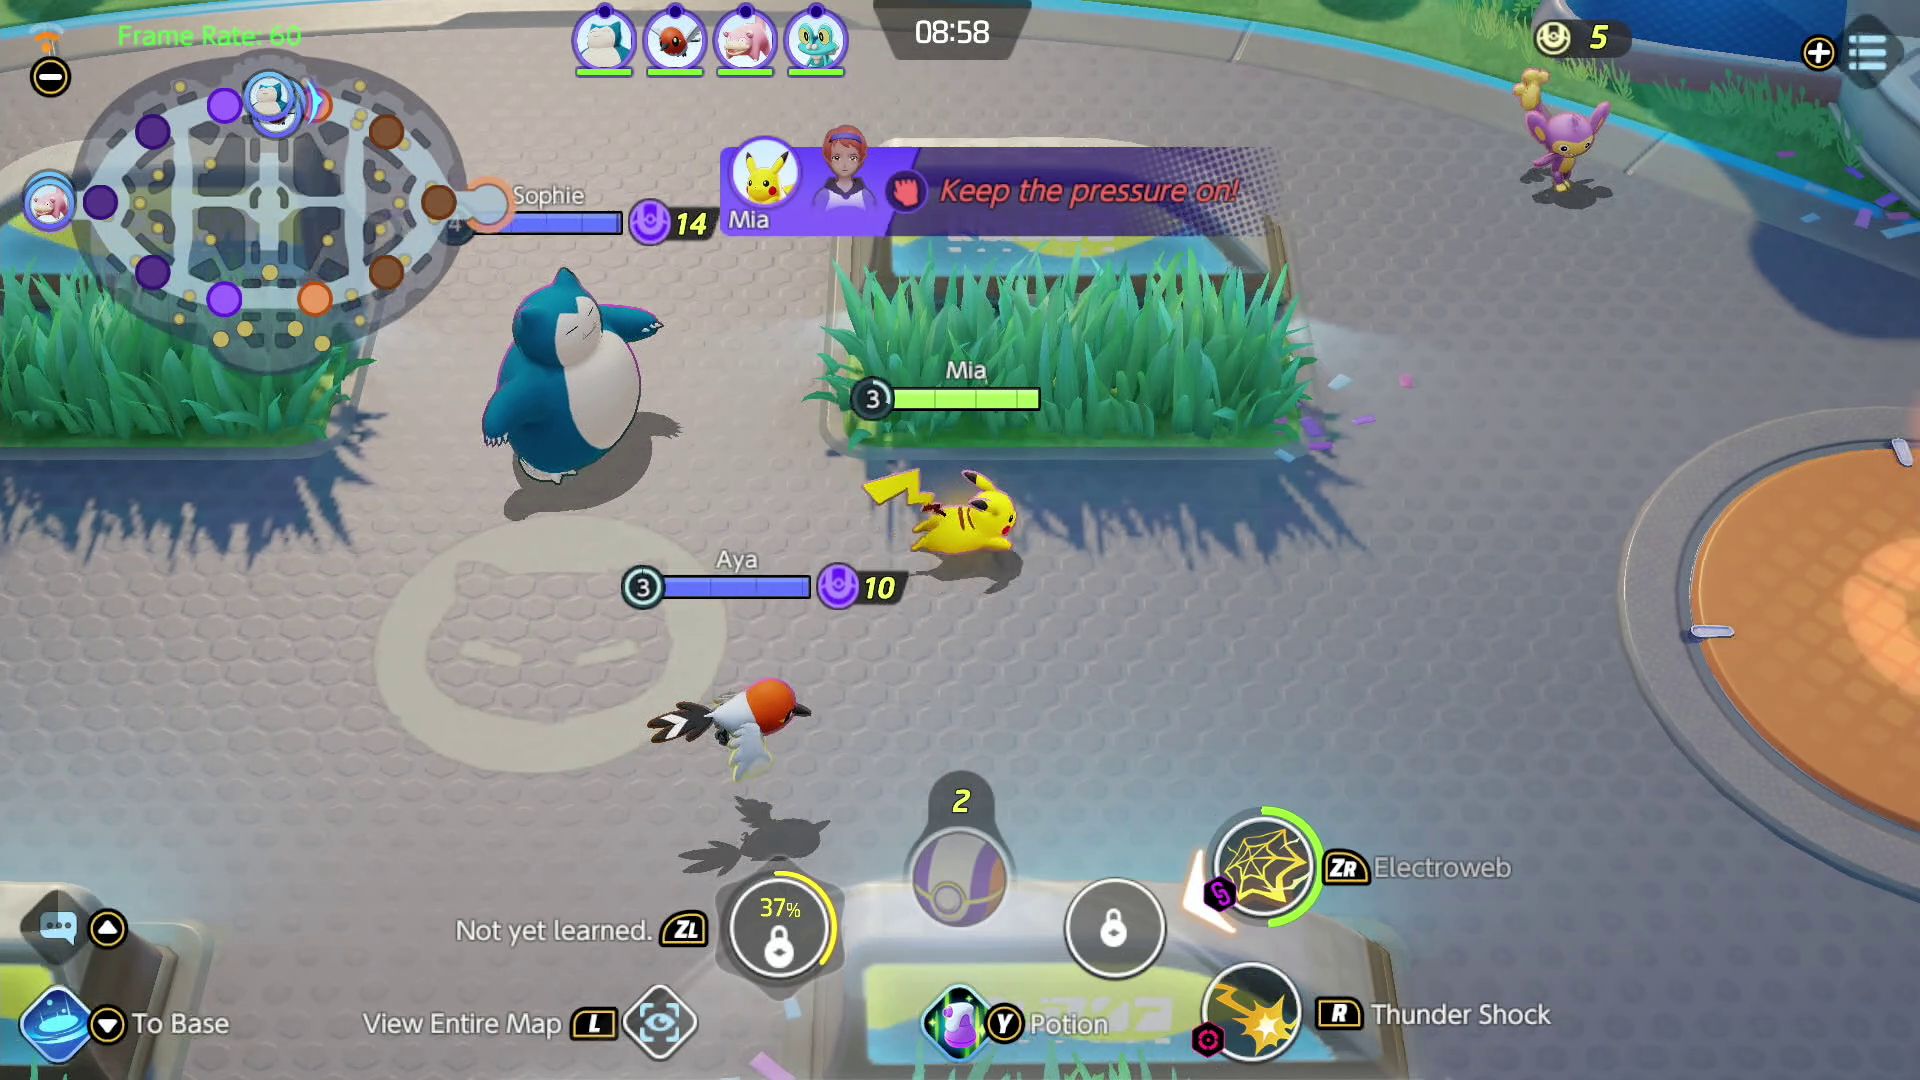 Pokémon UNITE - Novos Pokémon, Mapa e Modo de Jogo